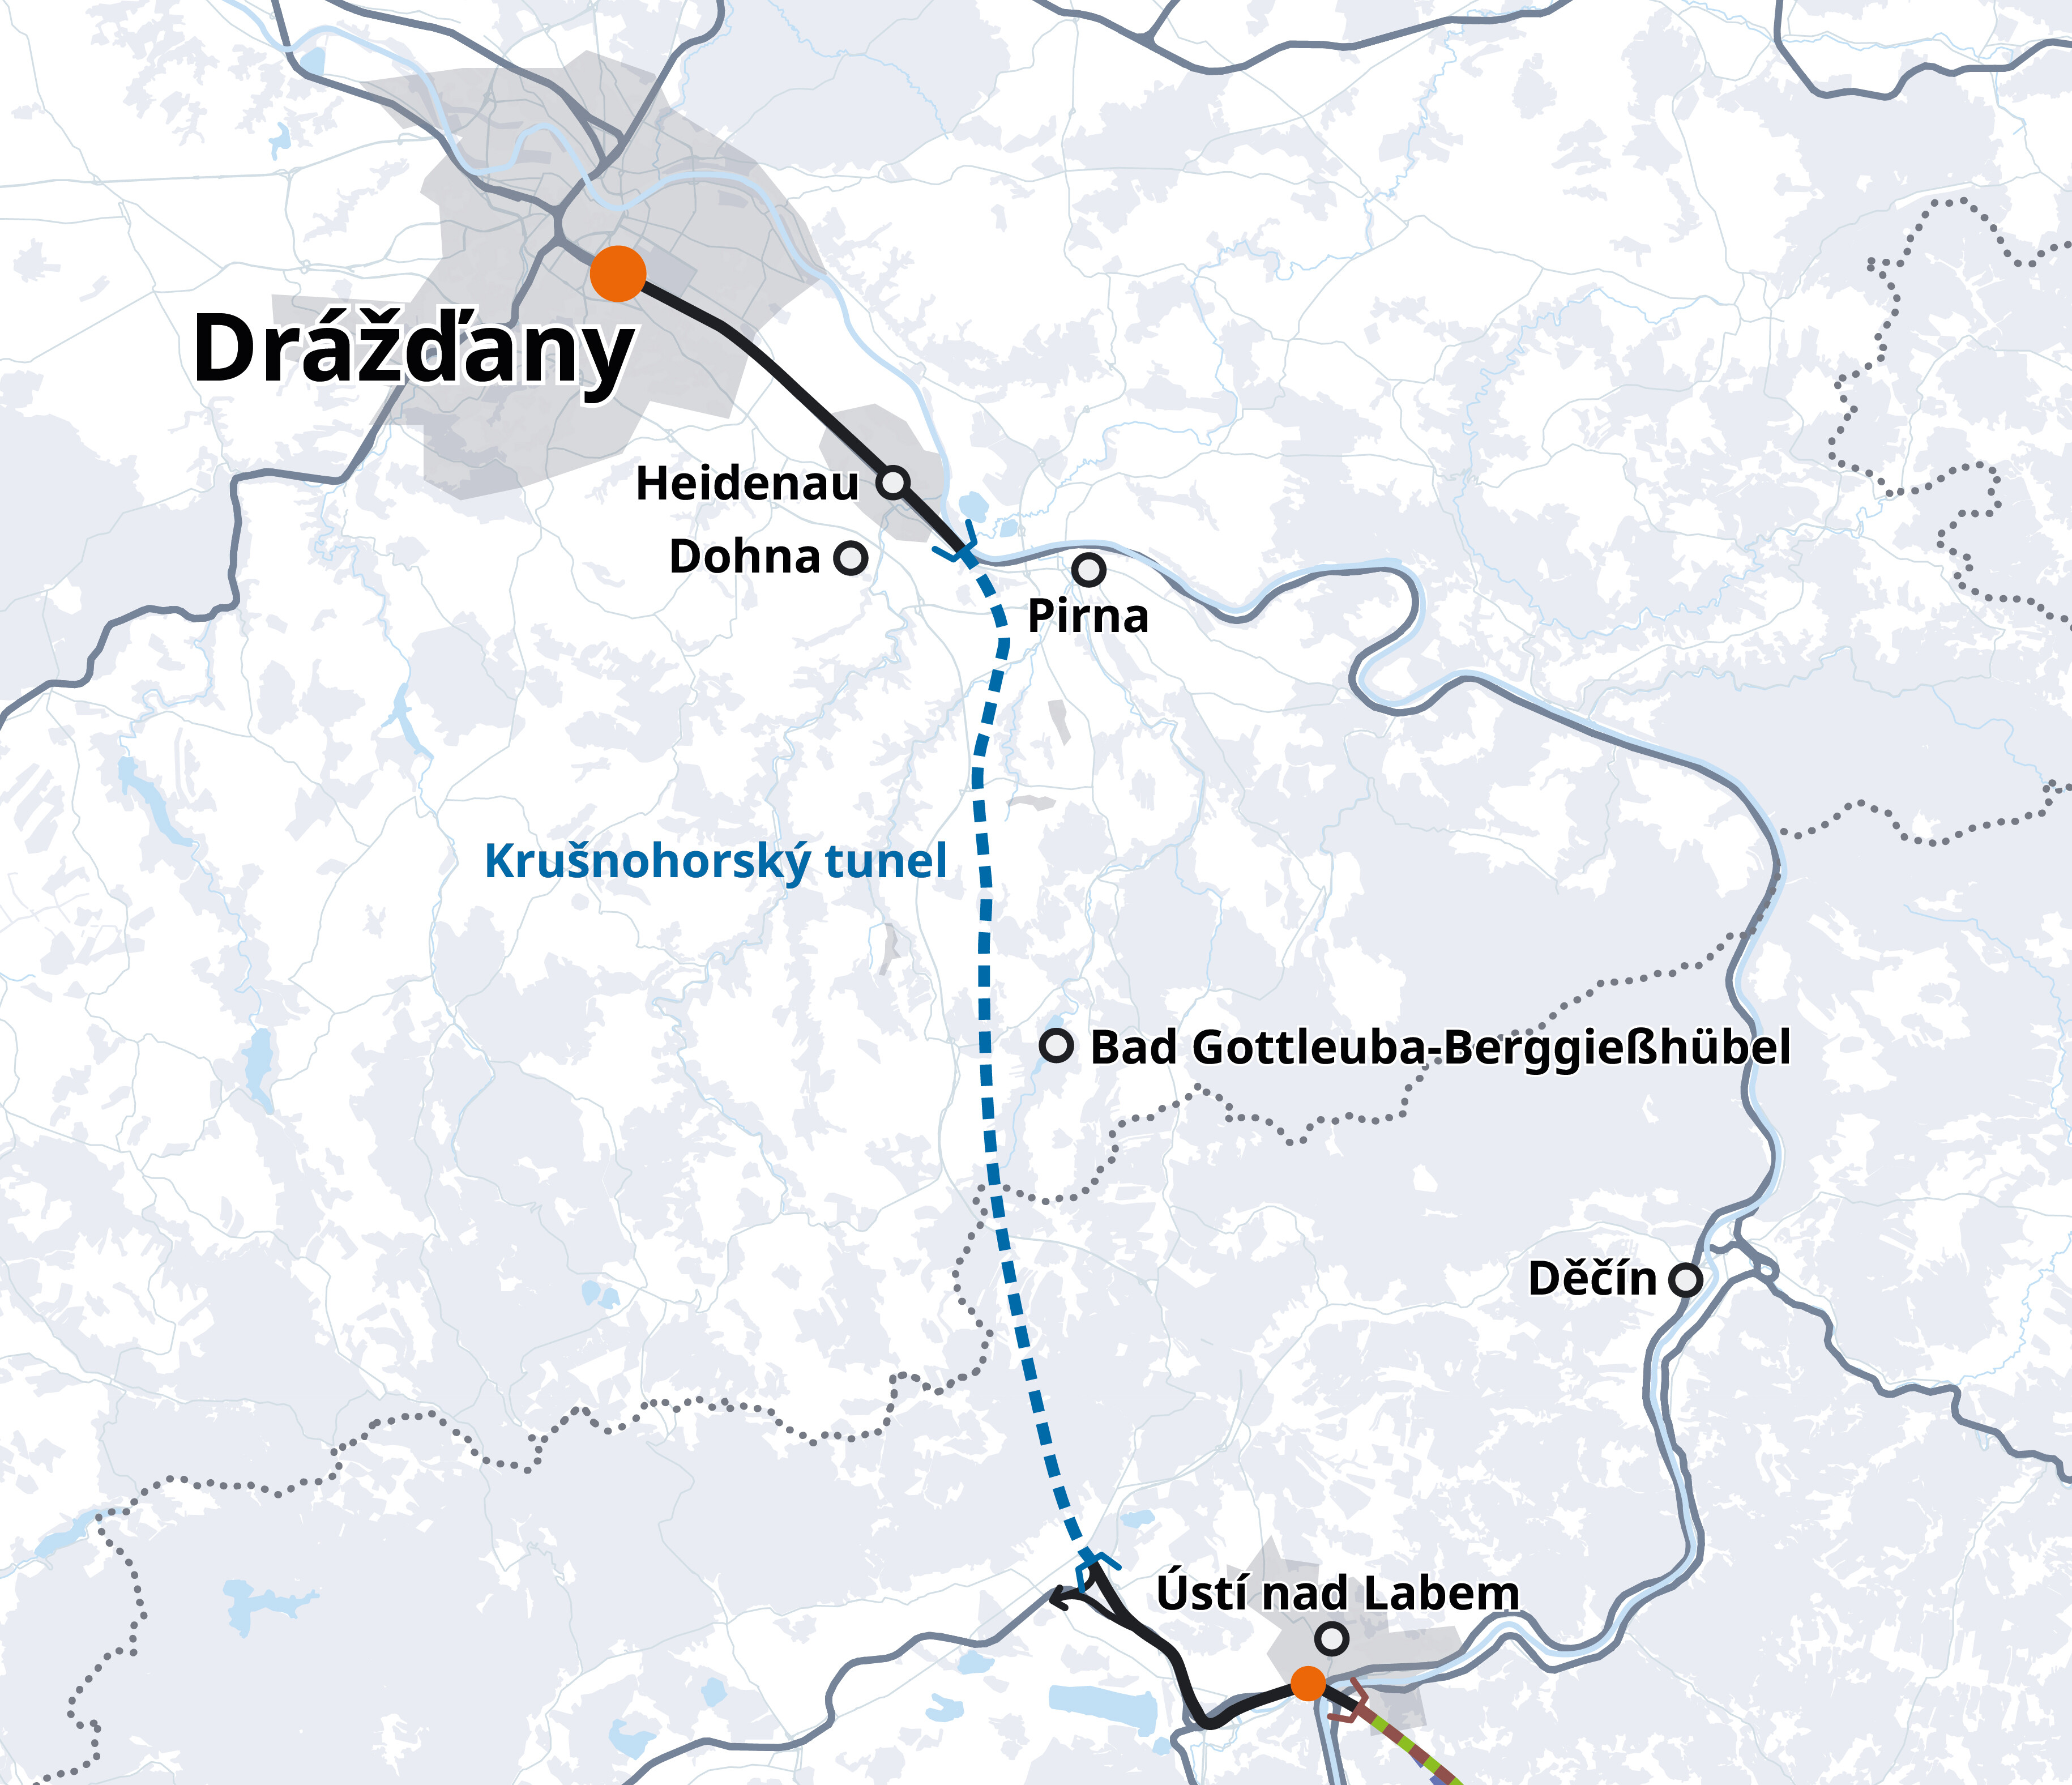 Drei Optionen für den Streckenverlauf auf tschechischer Seite